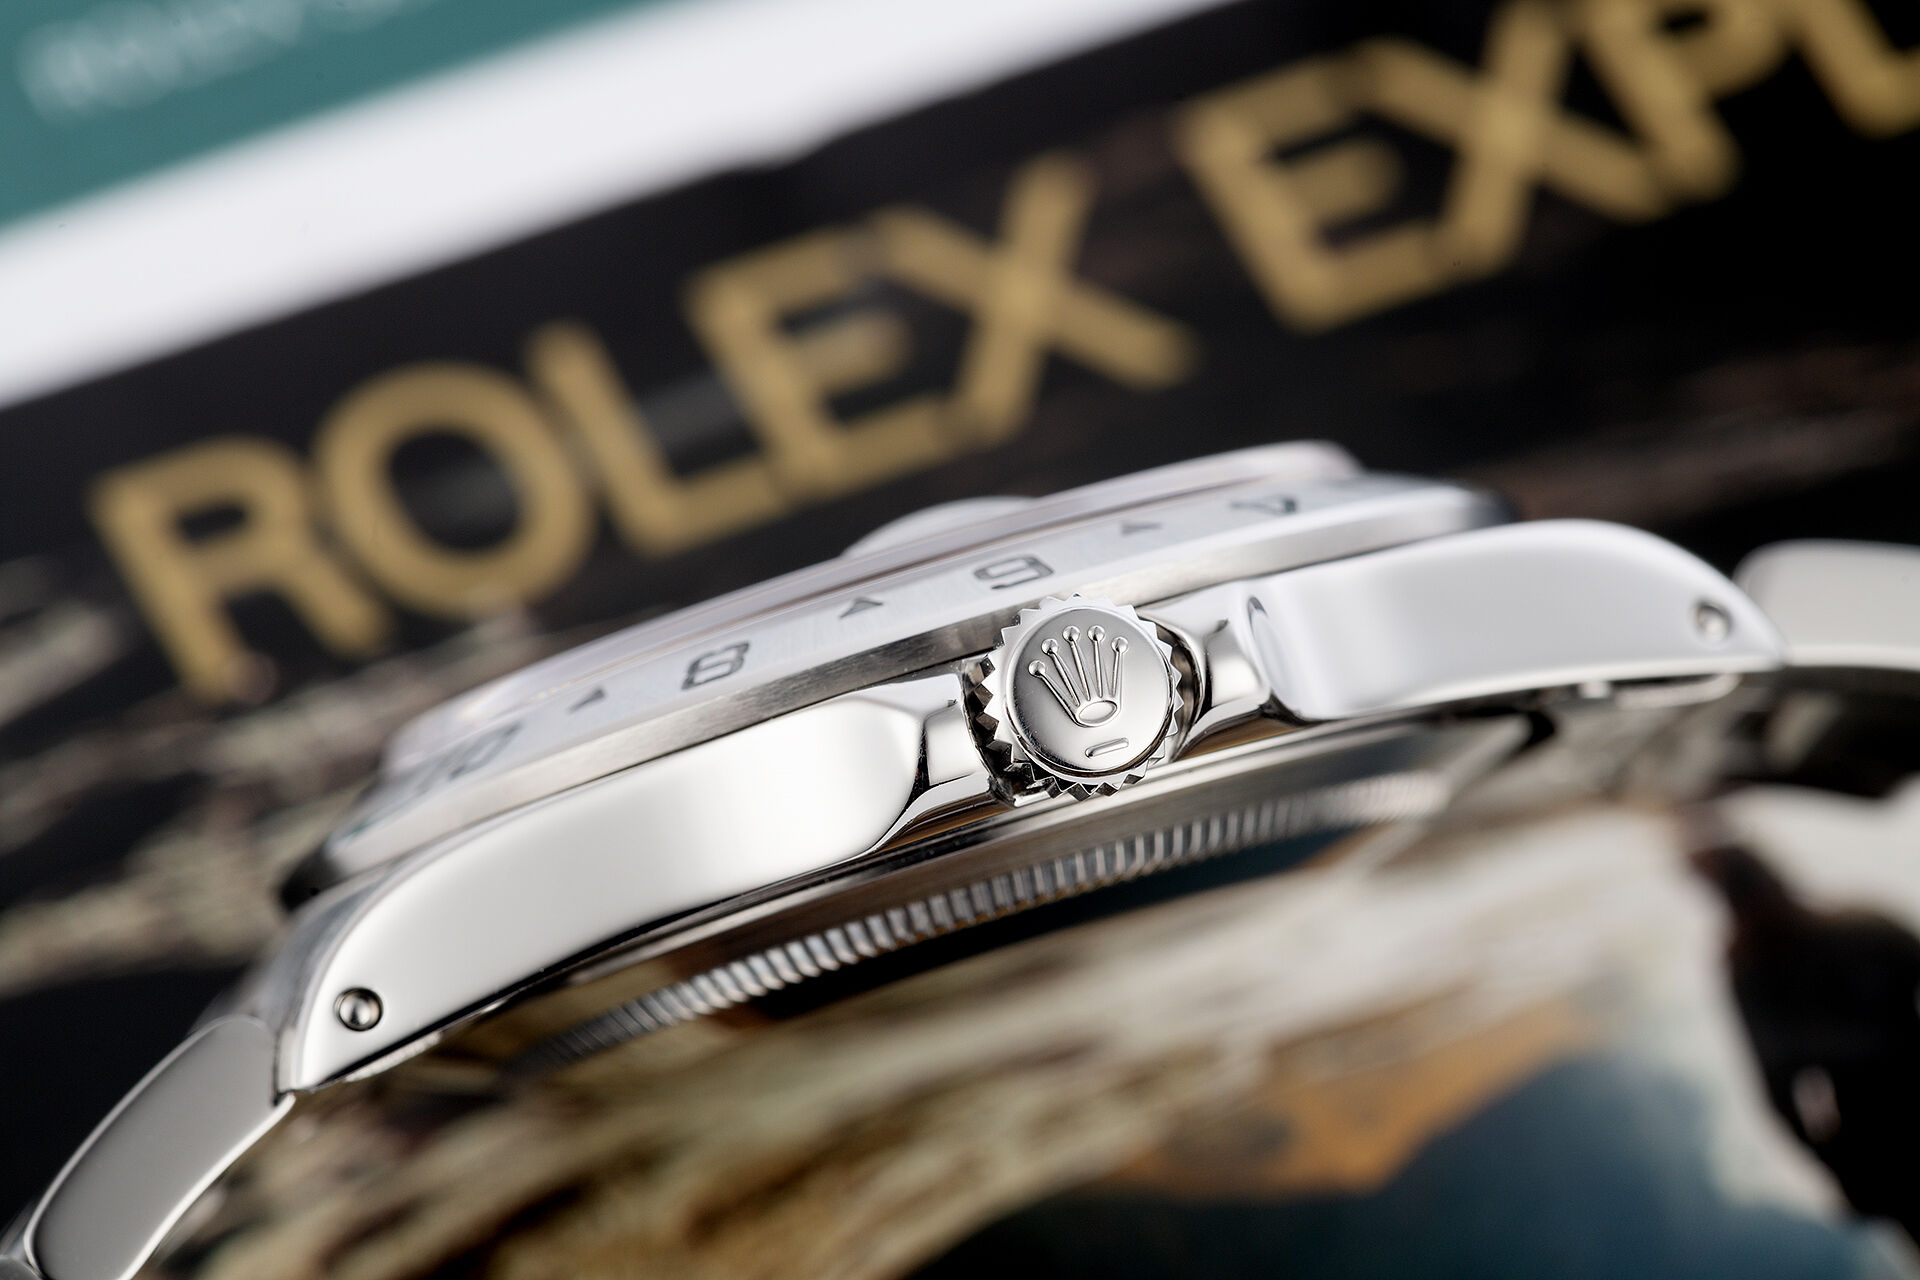 ref 16570 | Under Rolex Service Warranty | Rolex Explorer II